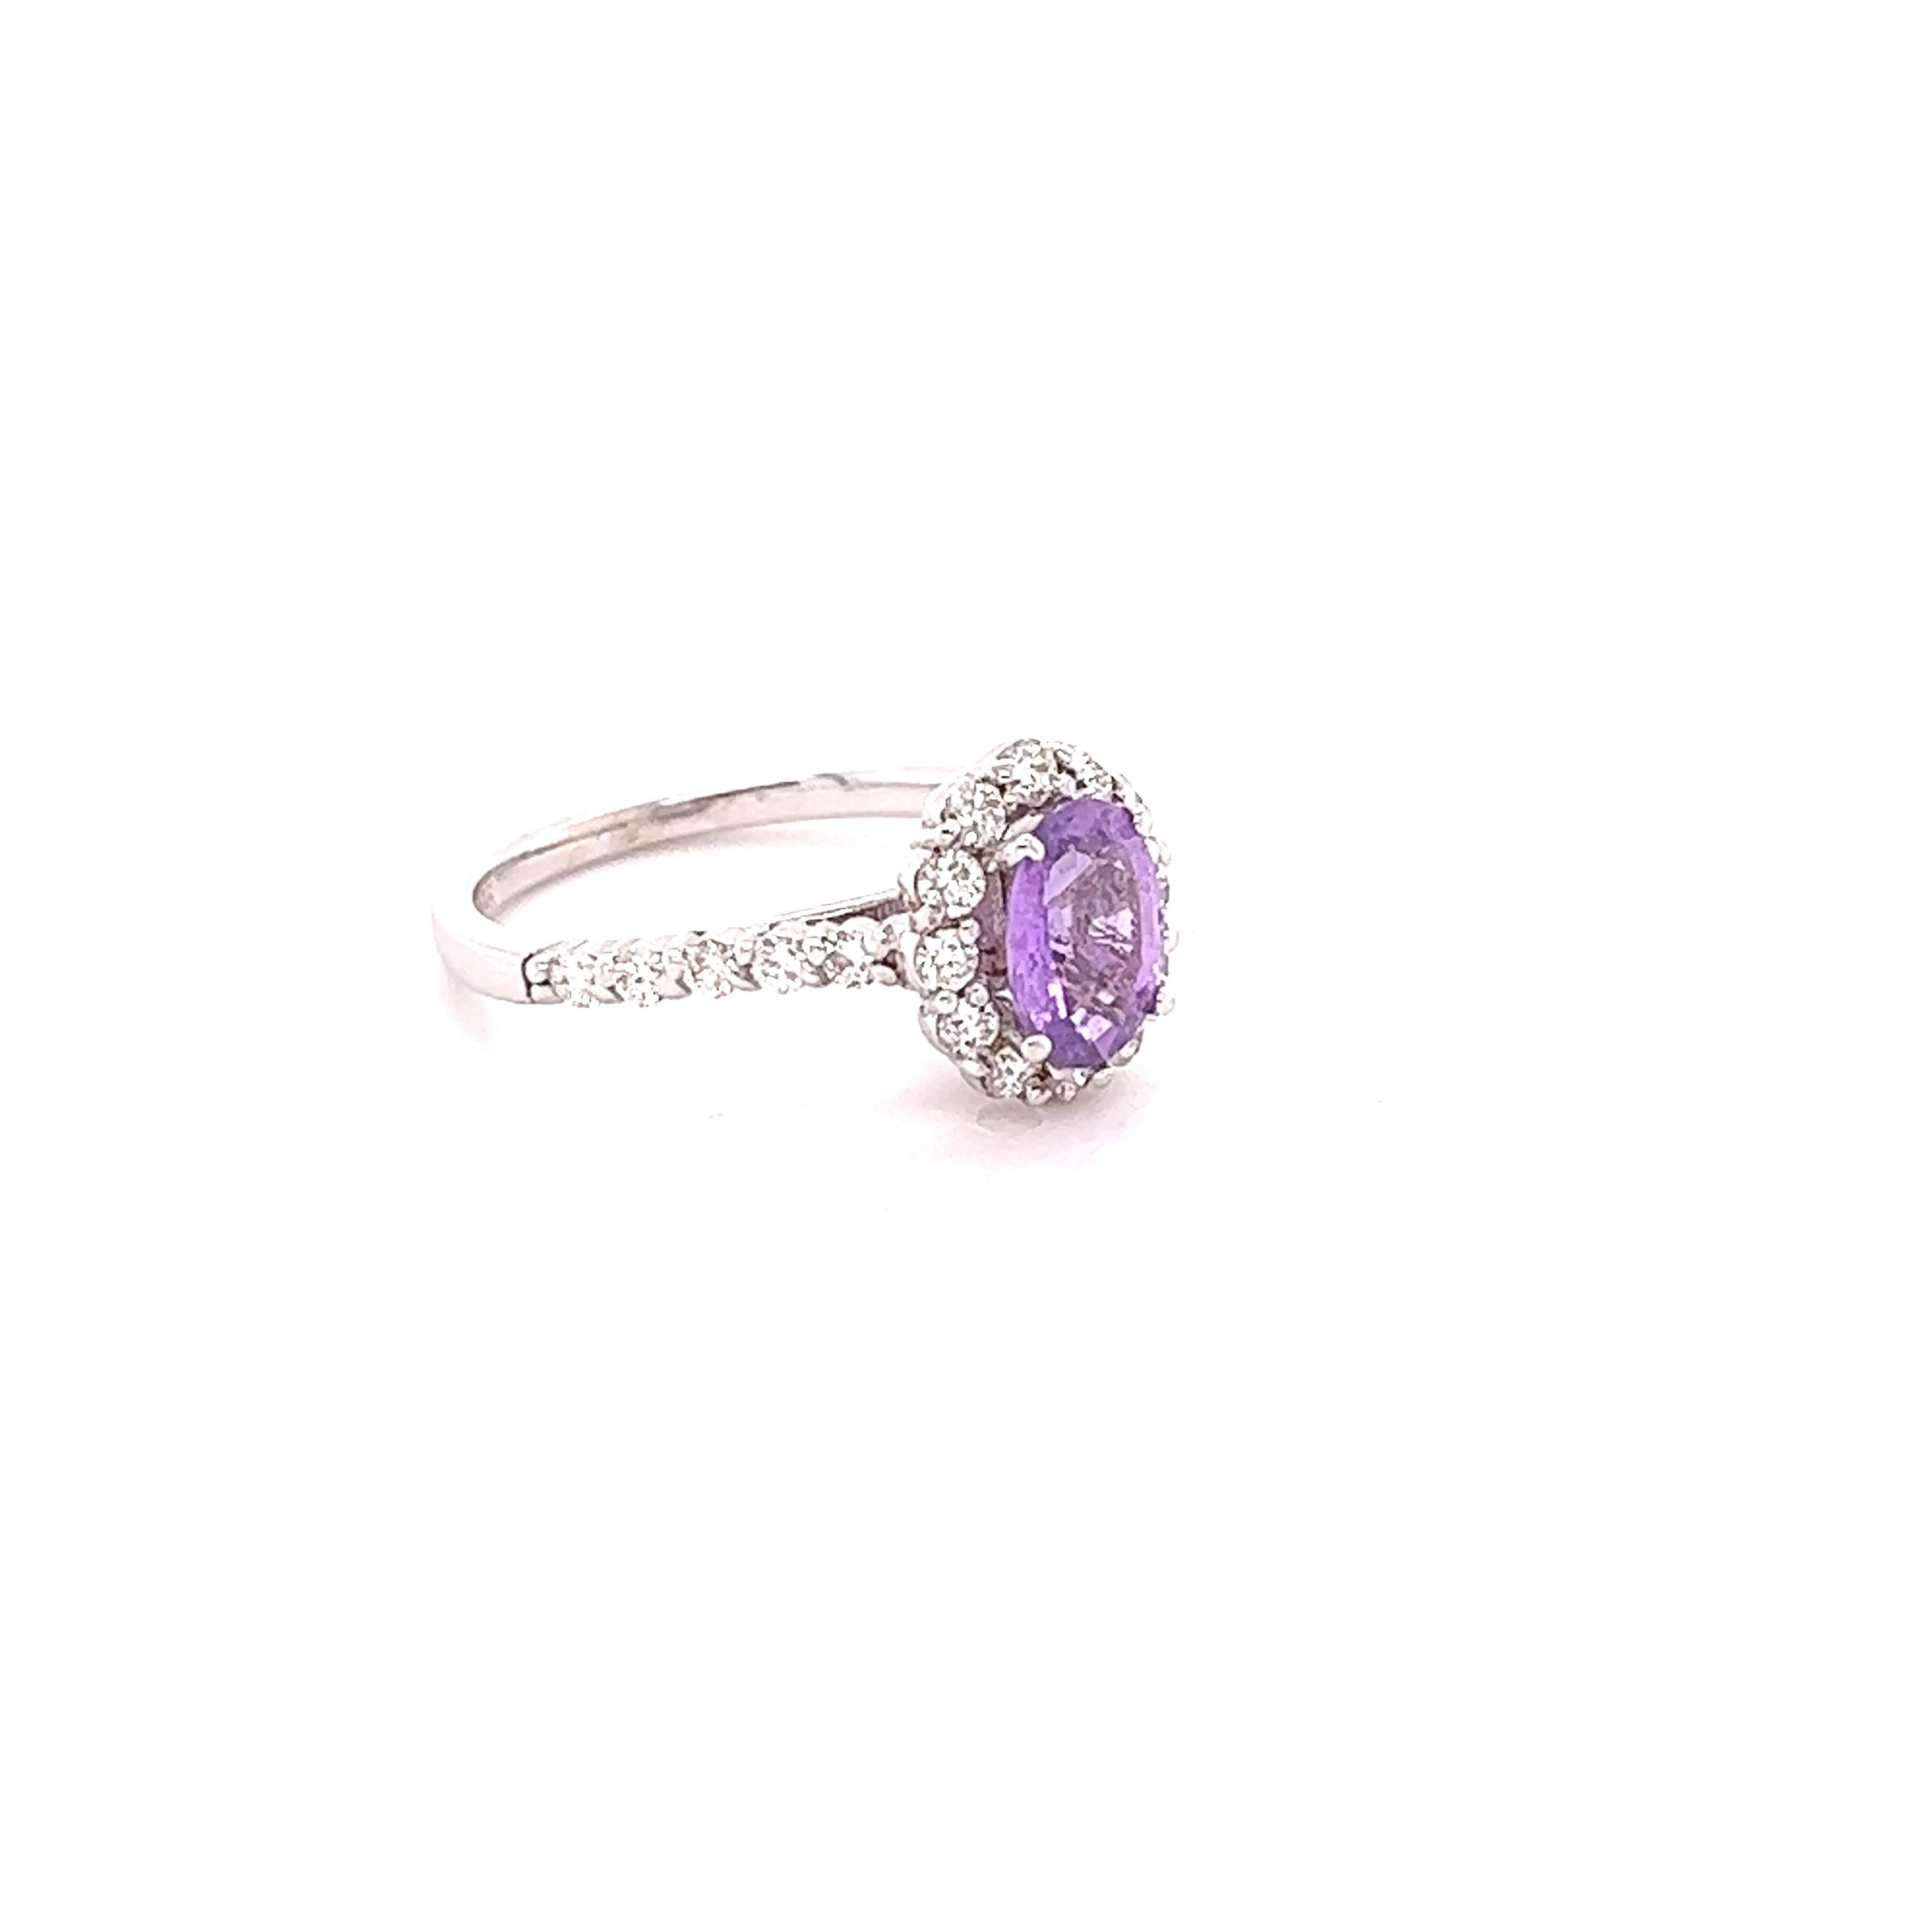 Dieser schöne Ring hat einen natürlichen rosa Saphir im Ovalschliff mit einem Gewicht von 1,31 Karat. 

Der Ring ist mit 22 Diamanten im Rundschliff mit einem Gewicht von 0,61 Karat und einer Reinheit und Farbe von VS/H verziert. Das